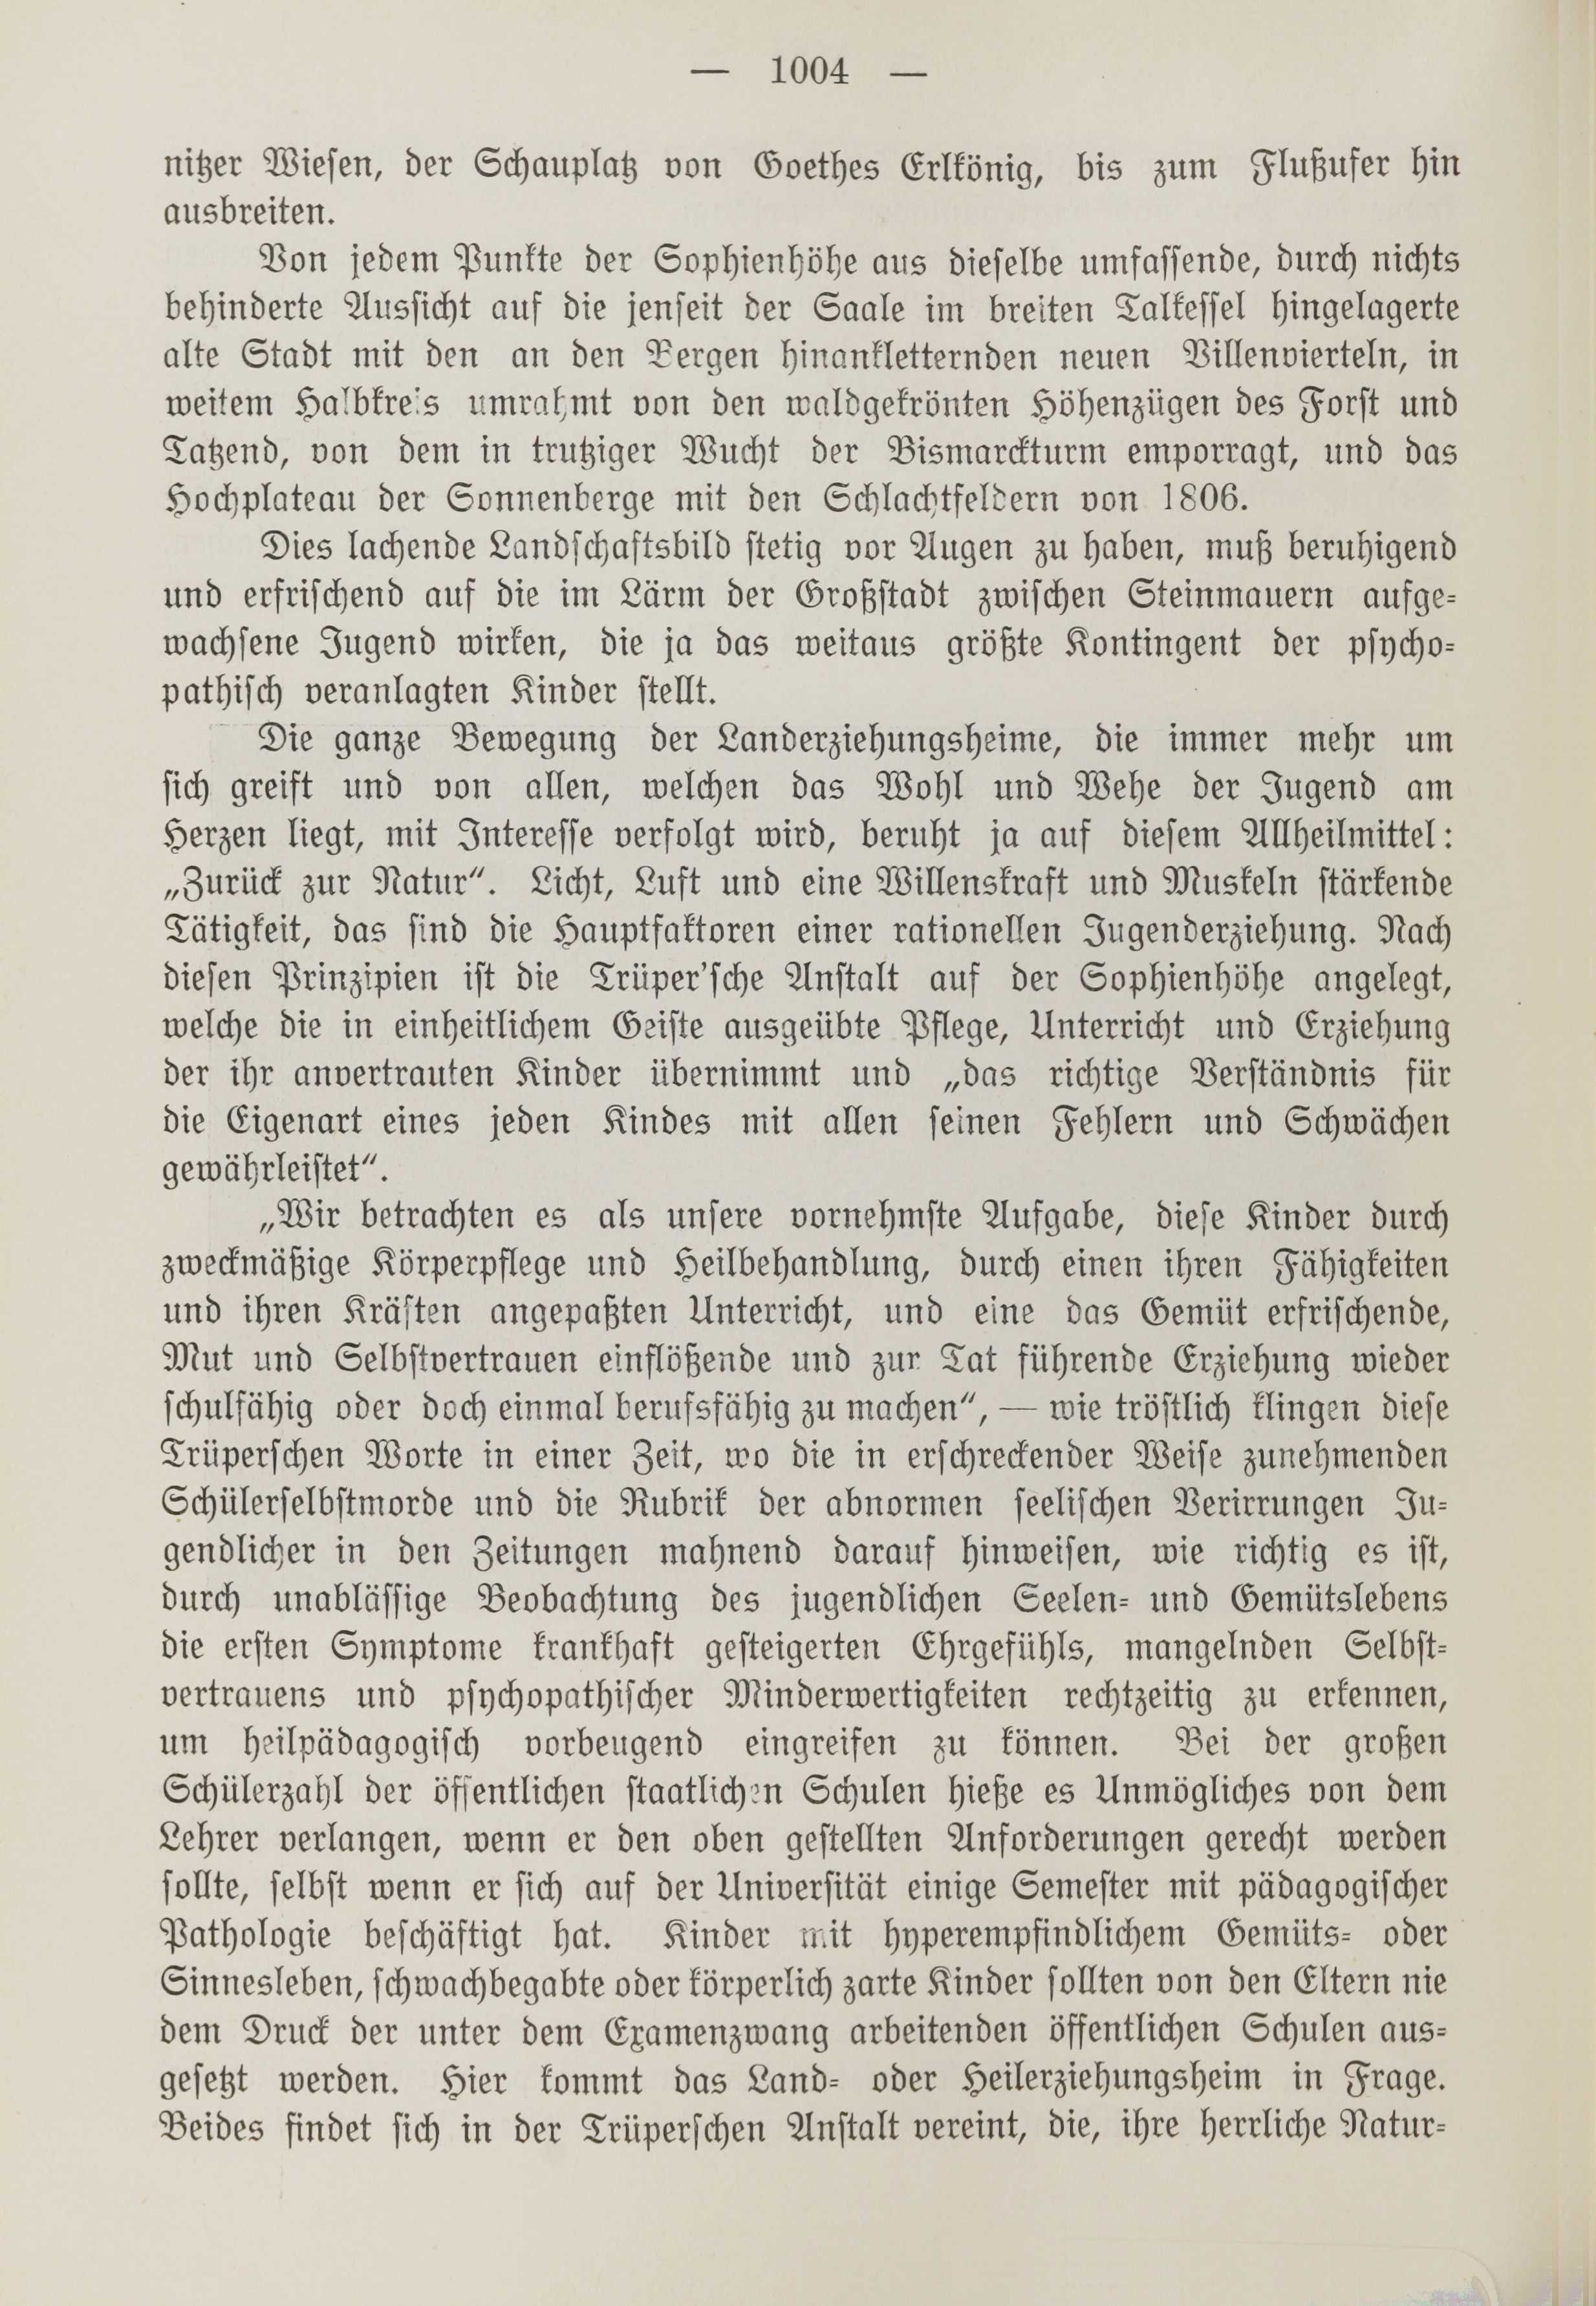 Deutsche Monatsschrift für Russland [1] (1912) | 1012. (1004) Main body of text